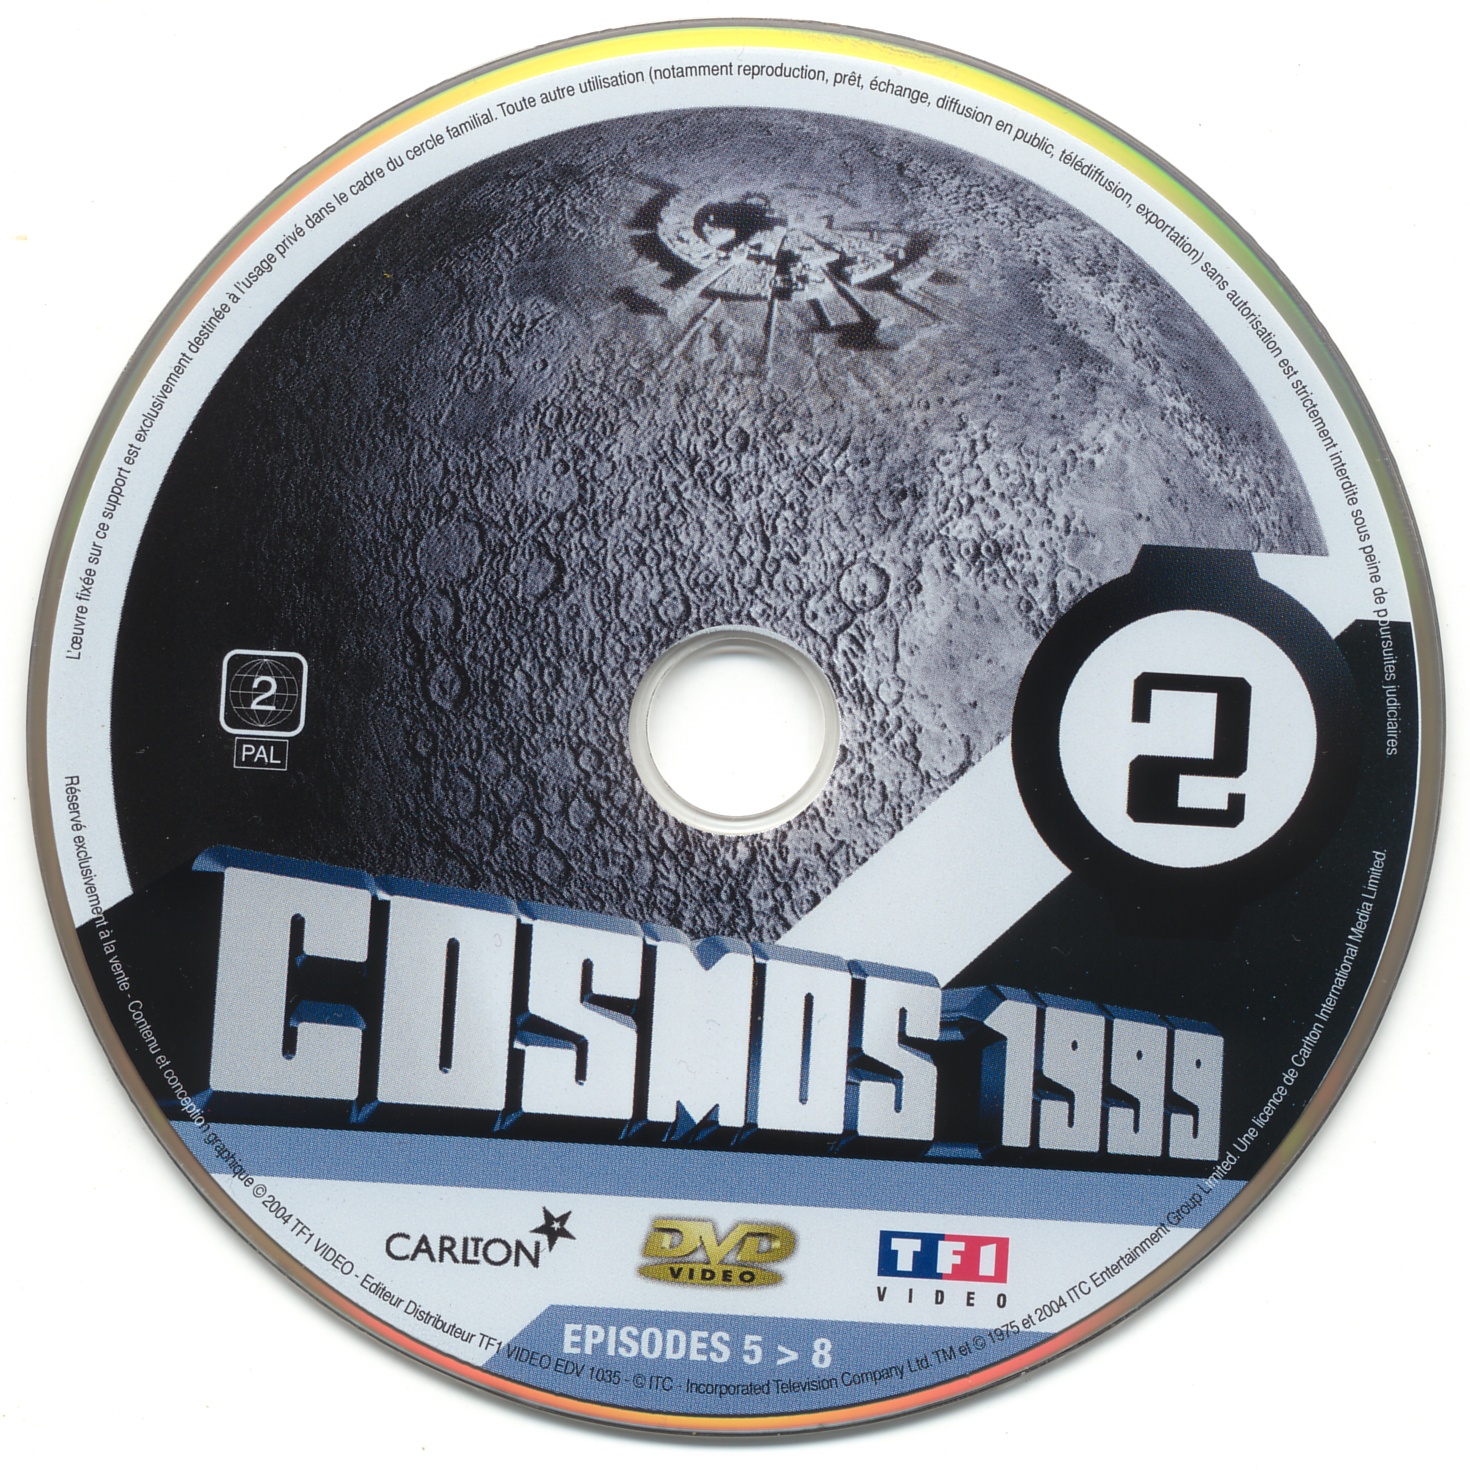 Cosmos 1999 saison 1 dvd 2